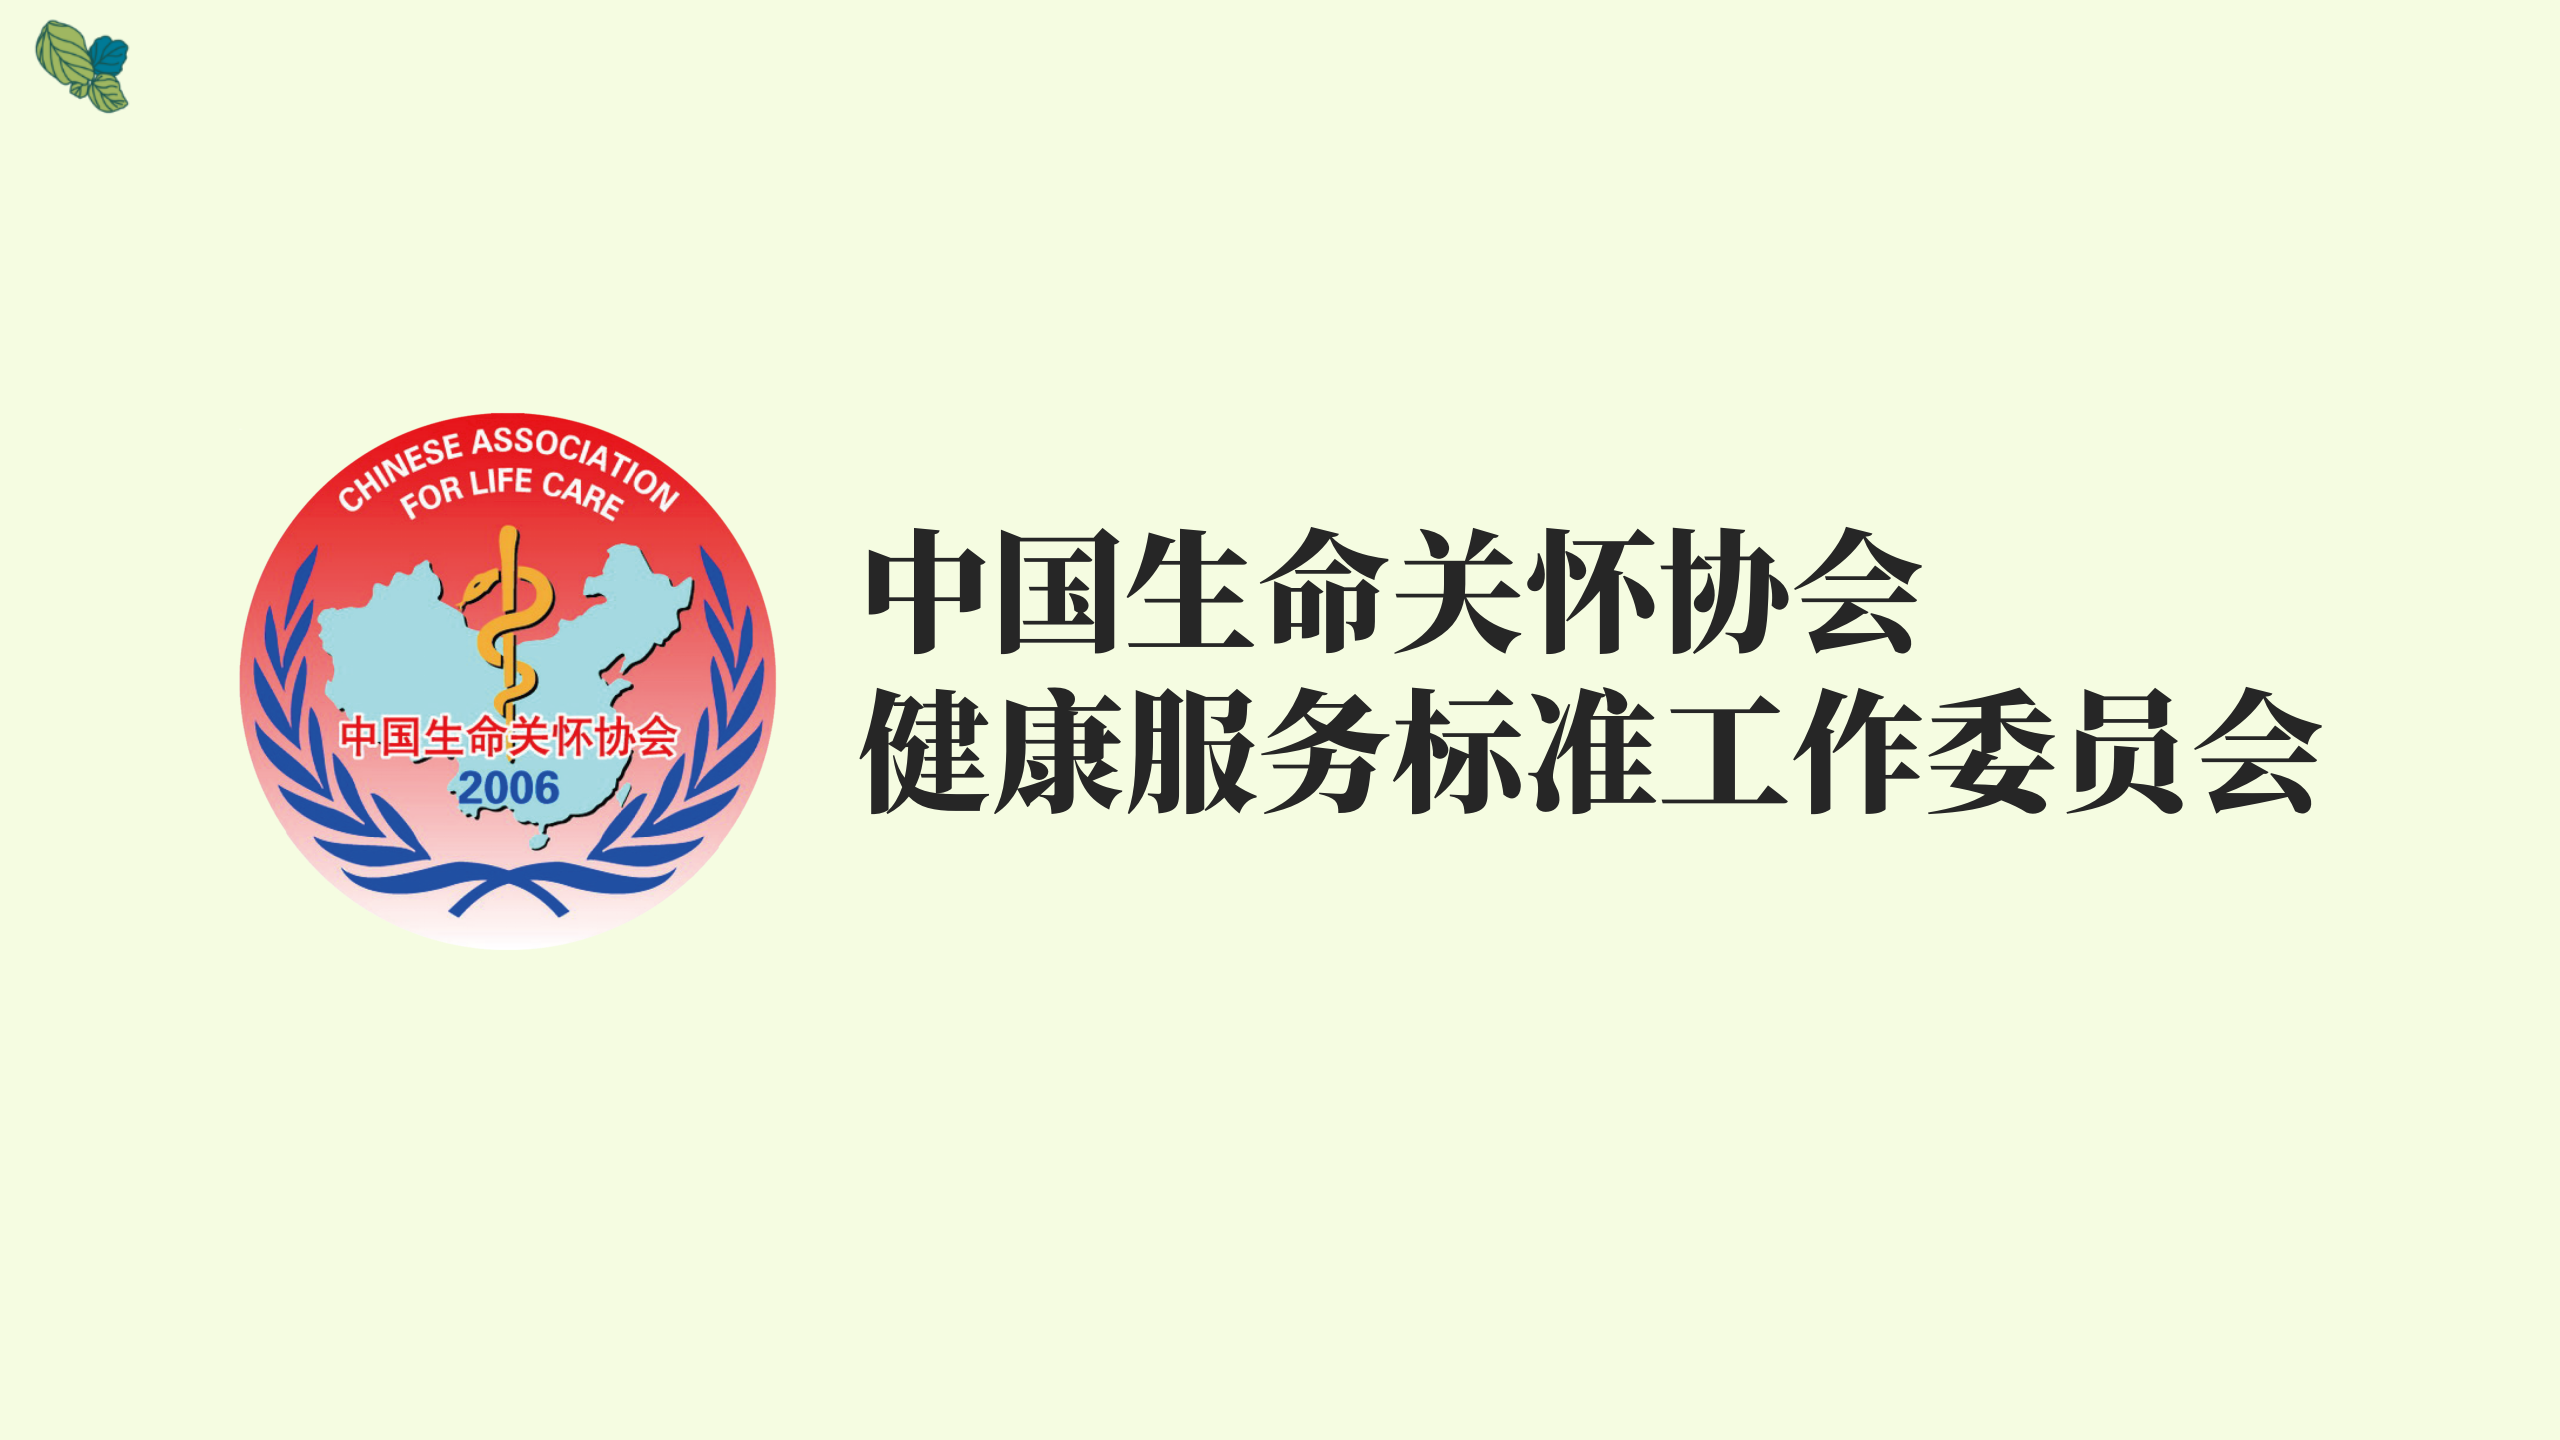 中国生命关怀协会健康服务标准工作委员会团体标准_01.png